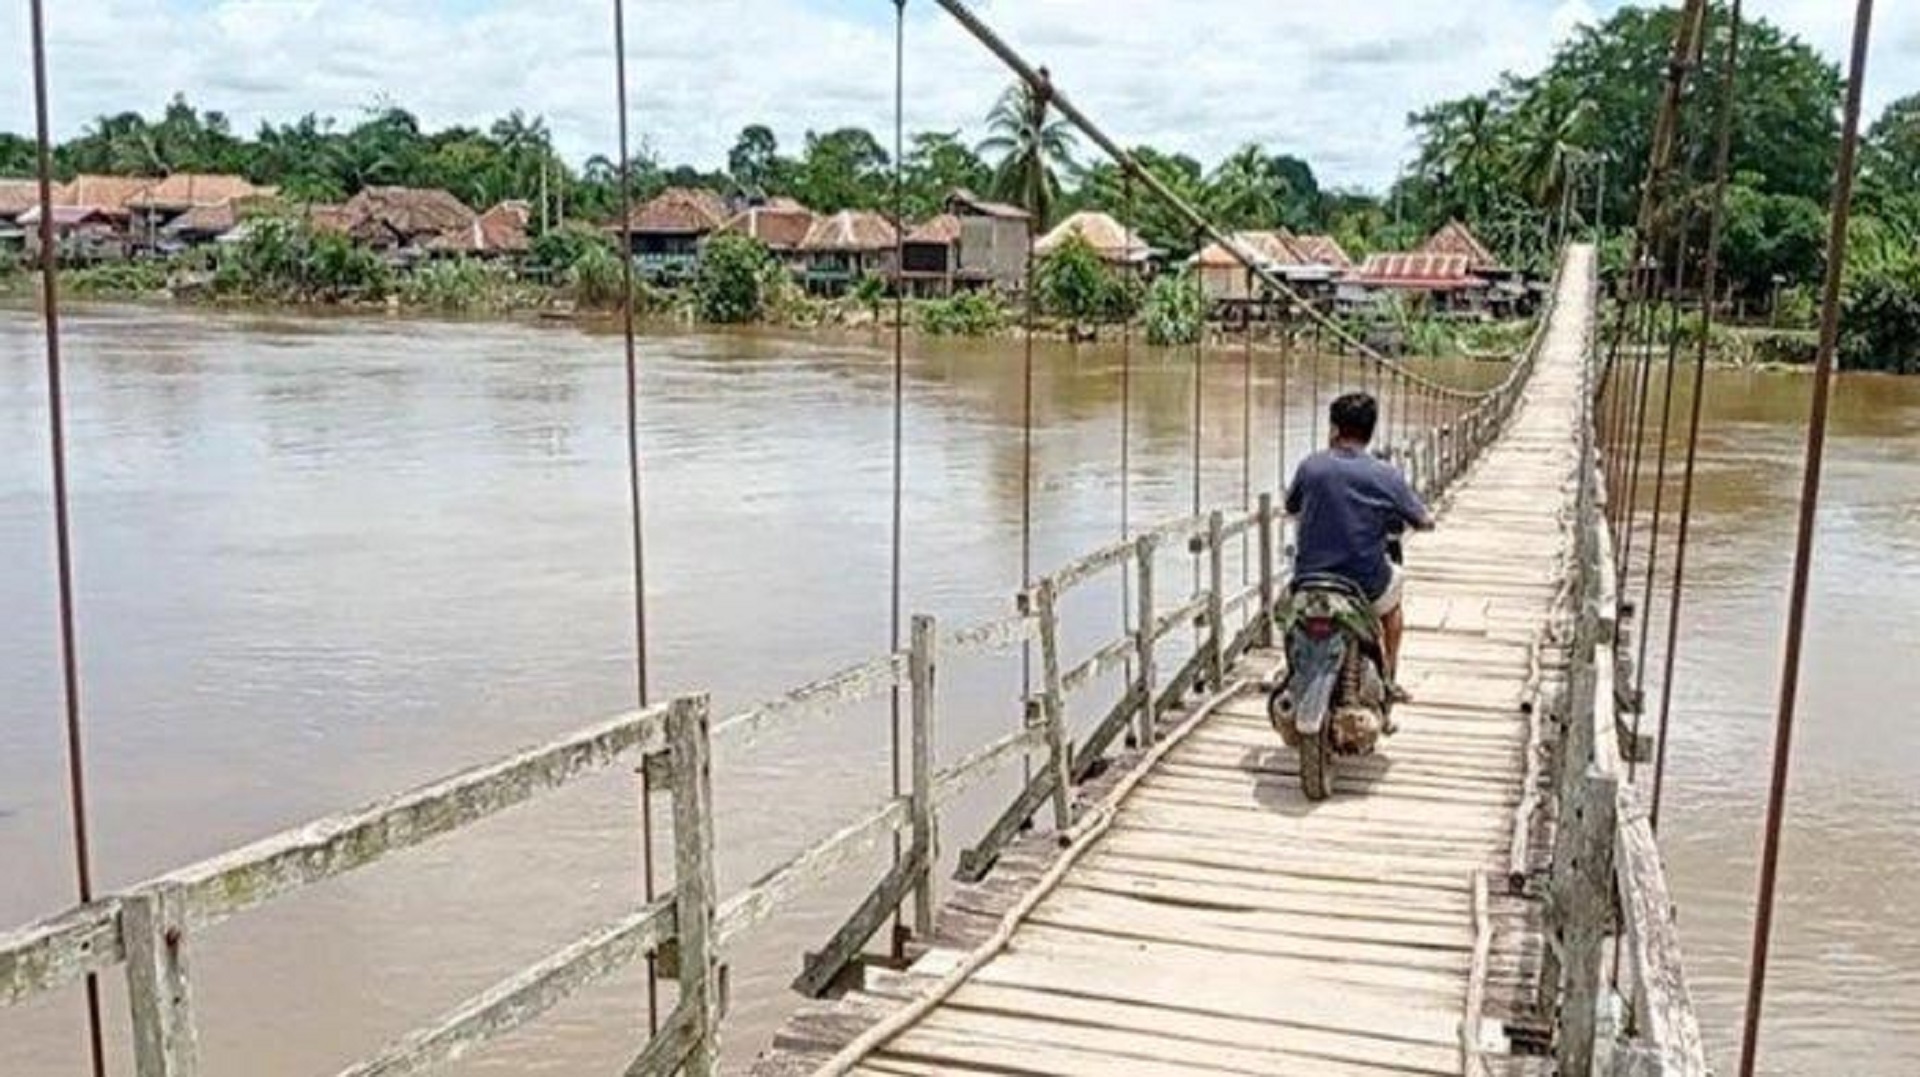 Jembatan Gantung Menjadi Pilihan Utama Penghubung Desa di Muratara